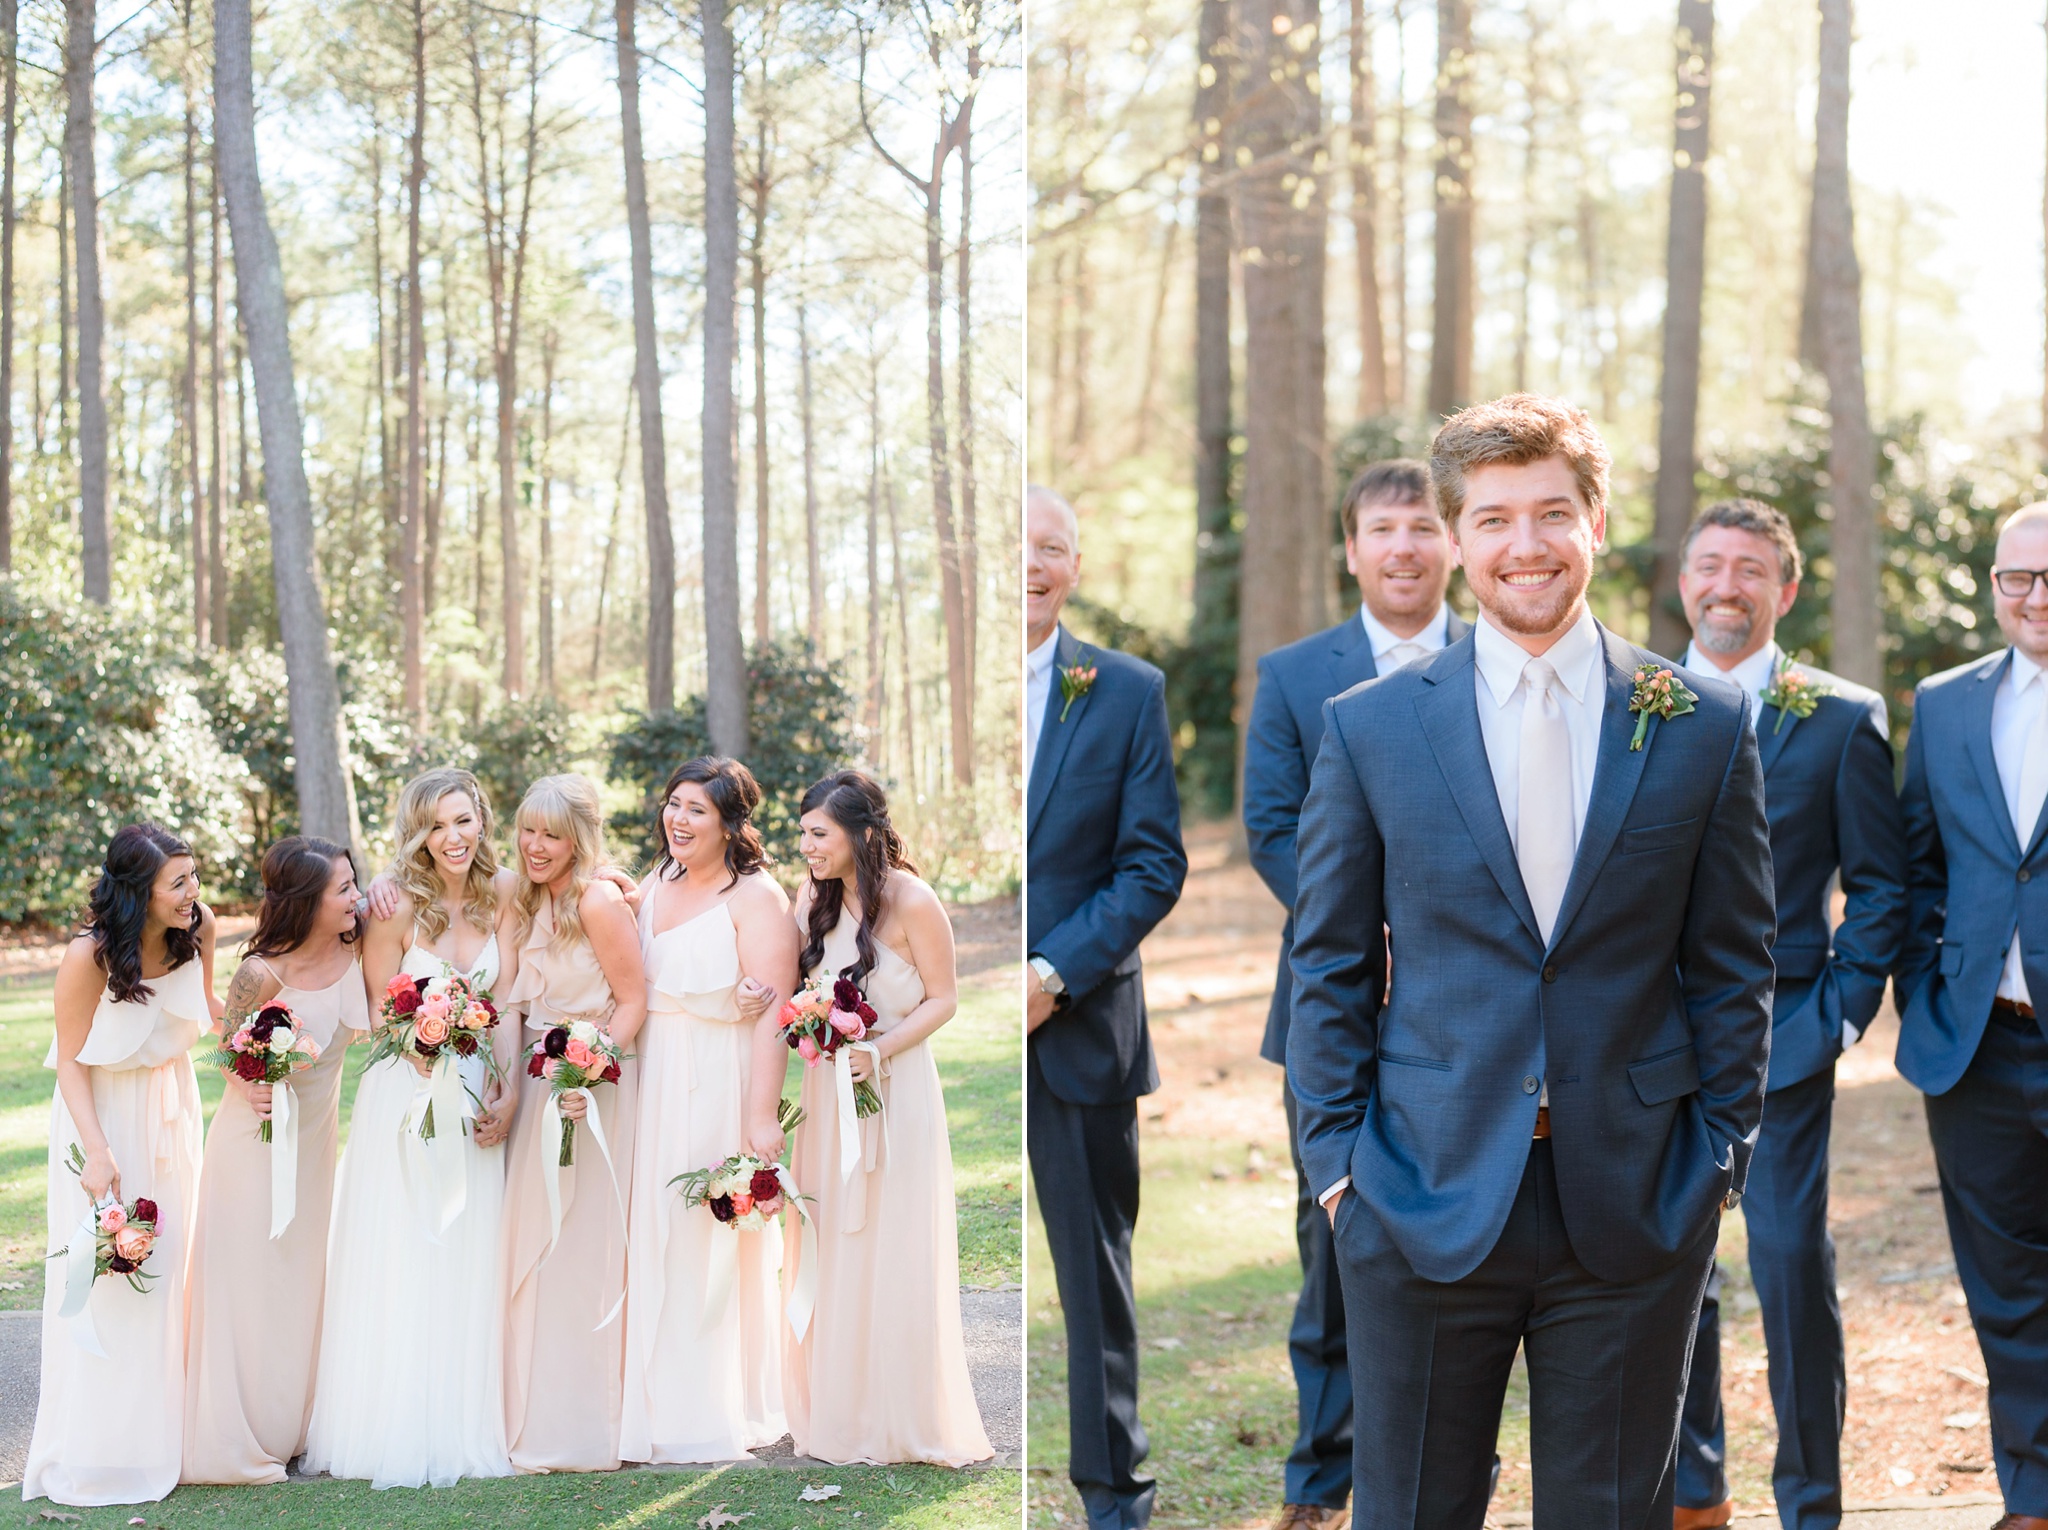 Aldridge Gardens Spring Wedding | Birmingham Alabama Wedding Photographers_0052.jpg